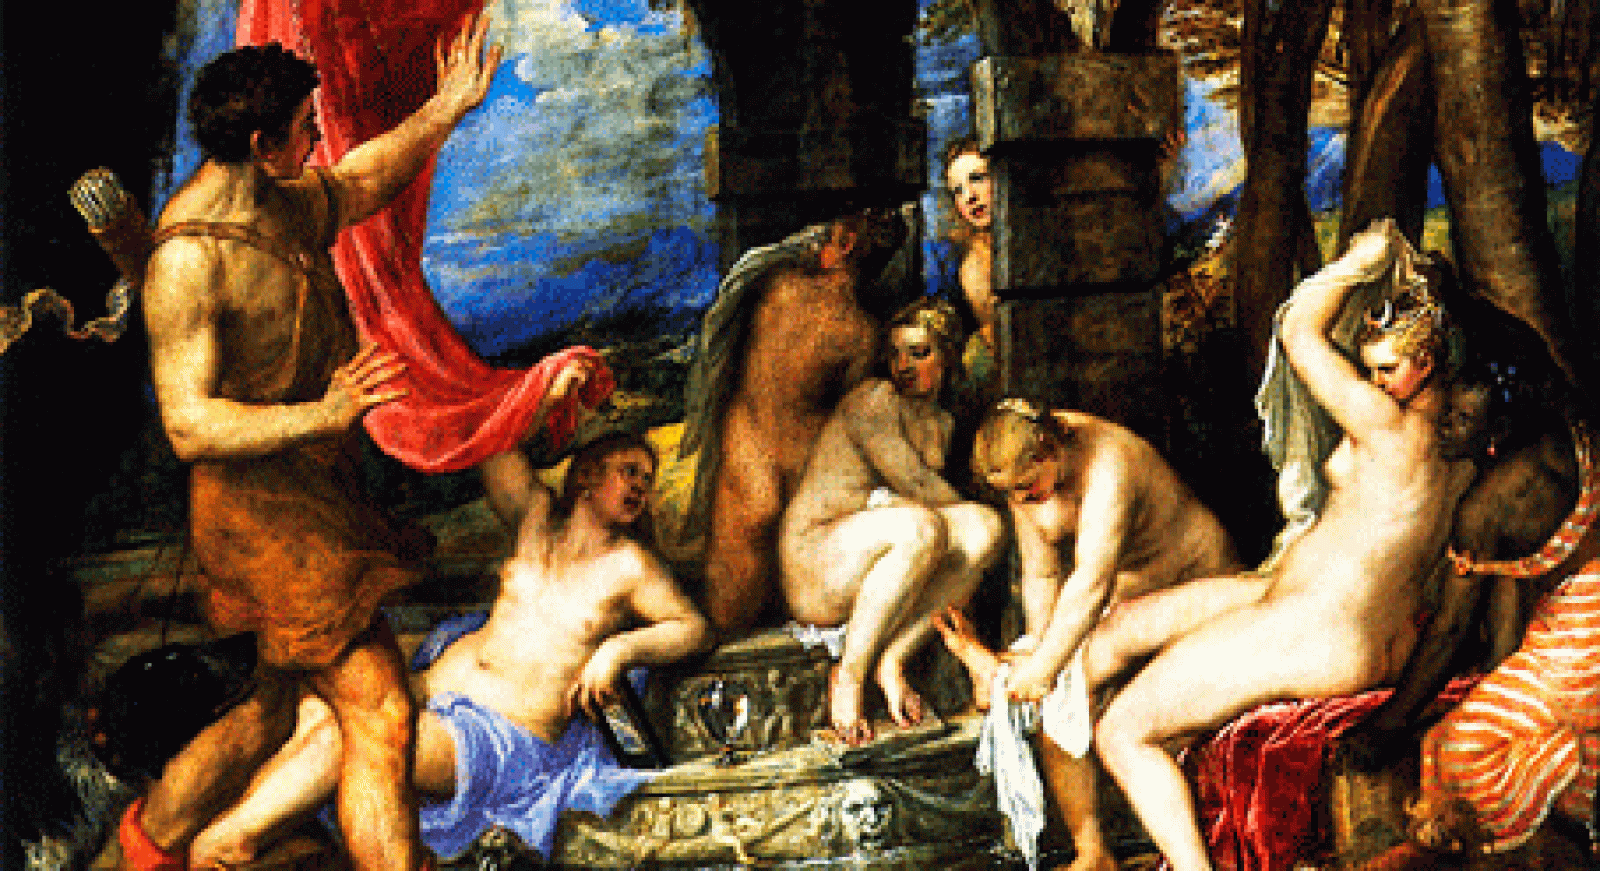 La aventura del saber - Las poesías de Tiziano